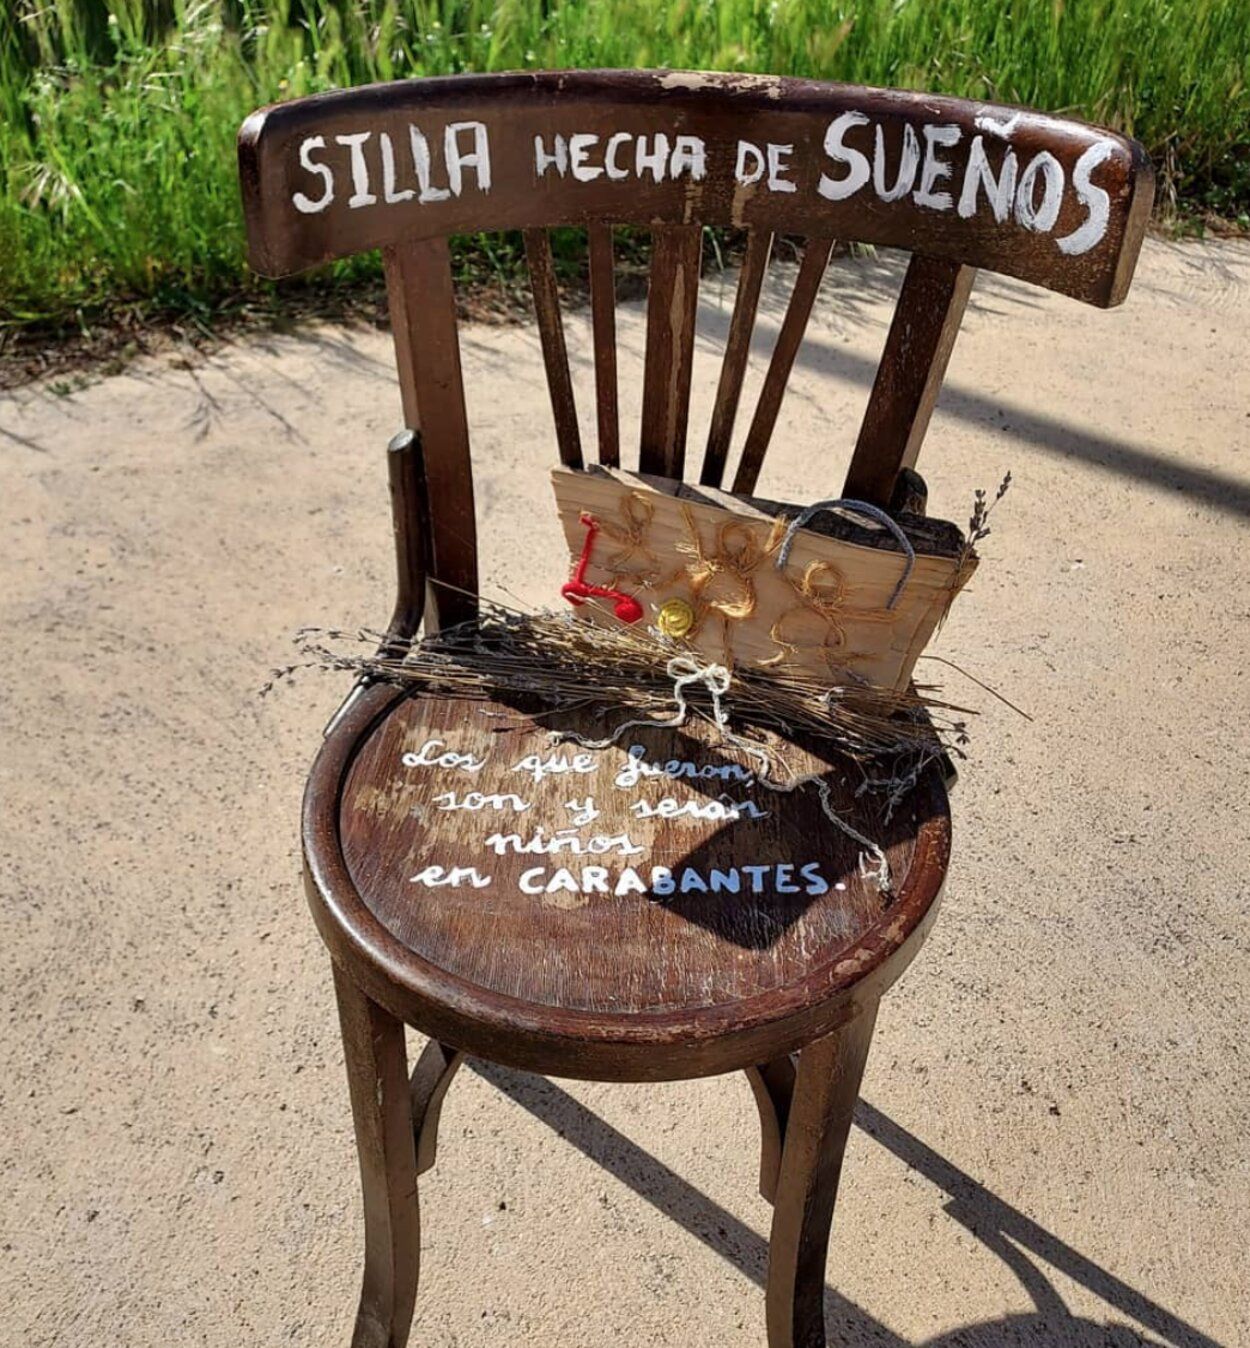 La 'Silla Solidaria' que lucha contra la despoblación en la provincia de Soria